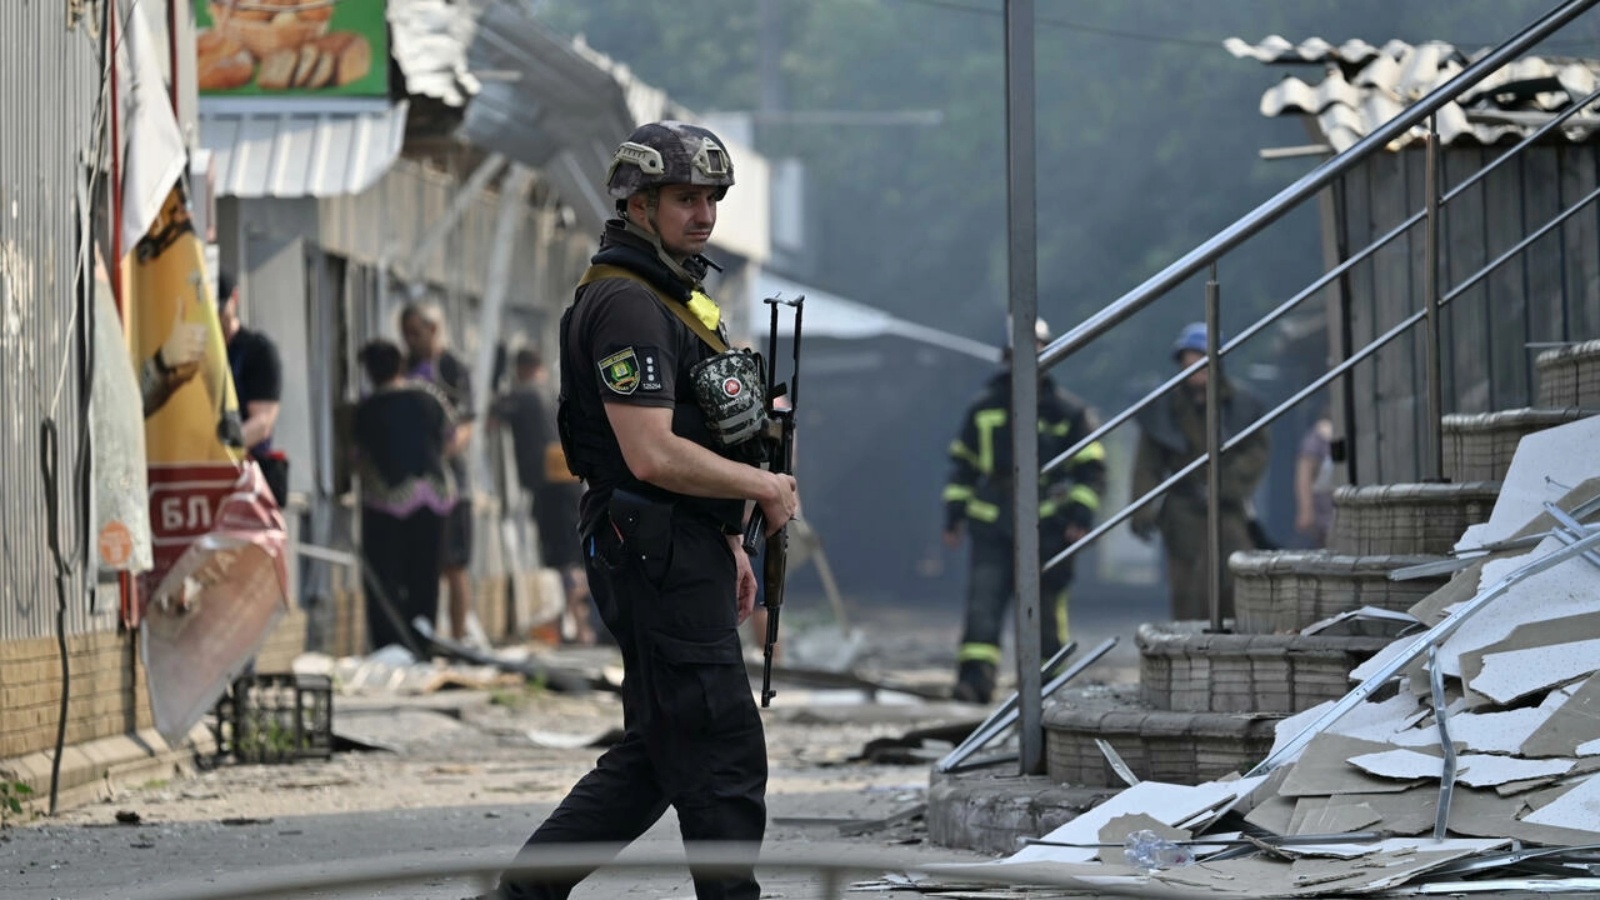 شرطي أوكراني يقوم بدورية راجلة في شوارع سلوفيانسك التي تعرضت لضربات صاروخية في الثالث من يوليو 2022